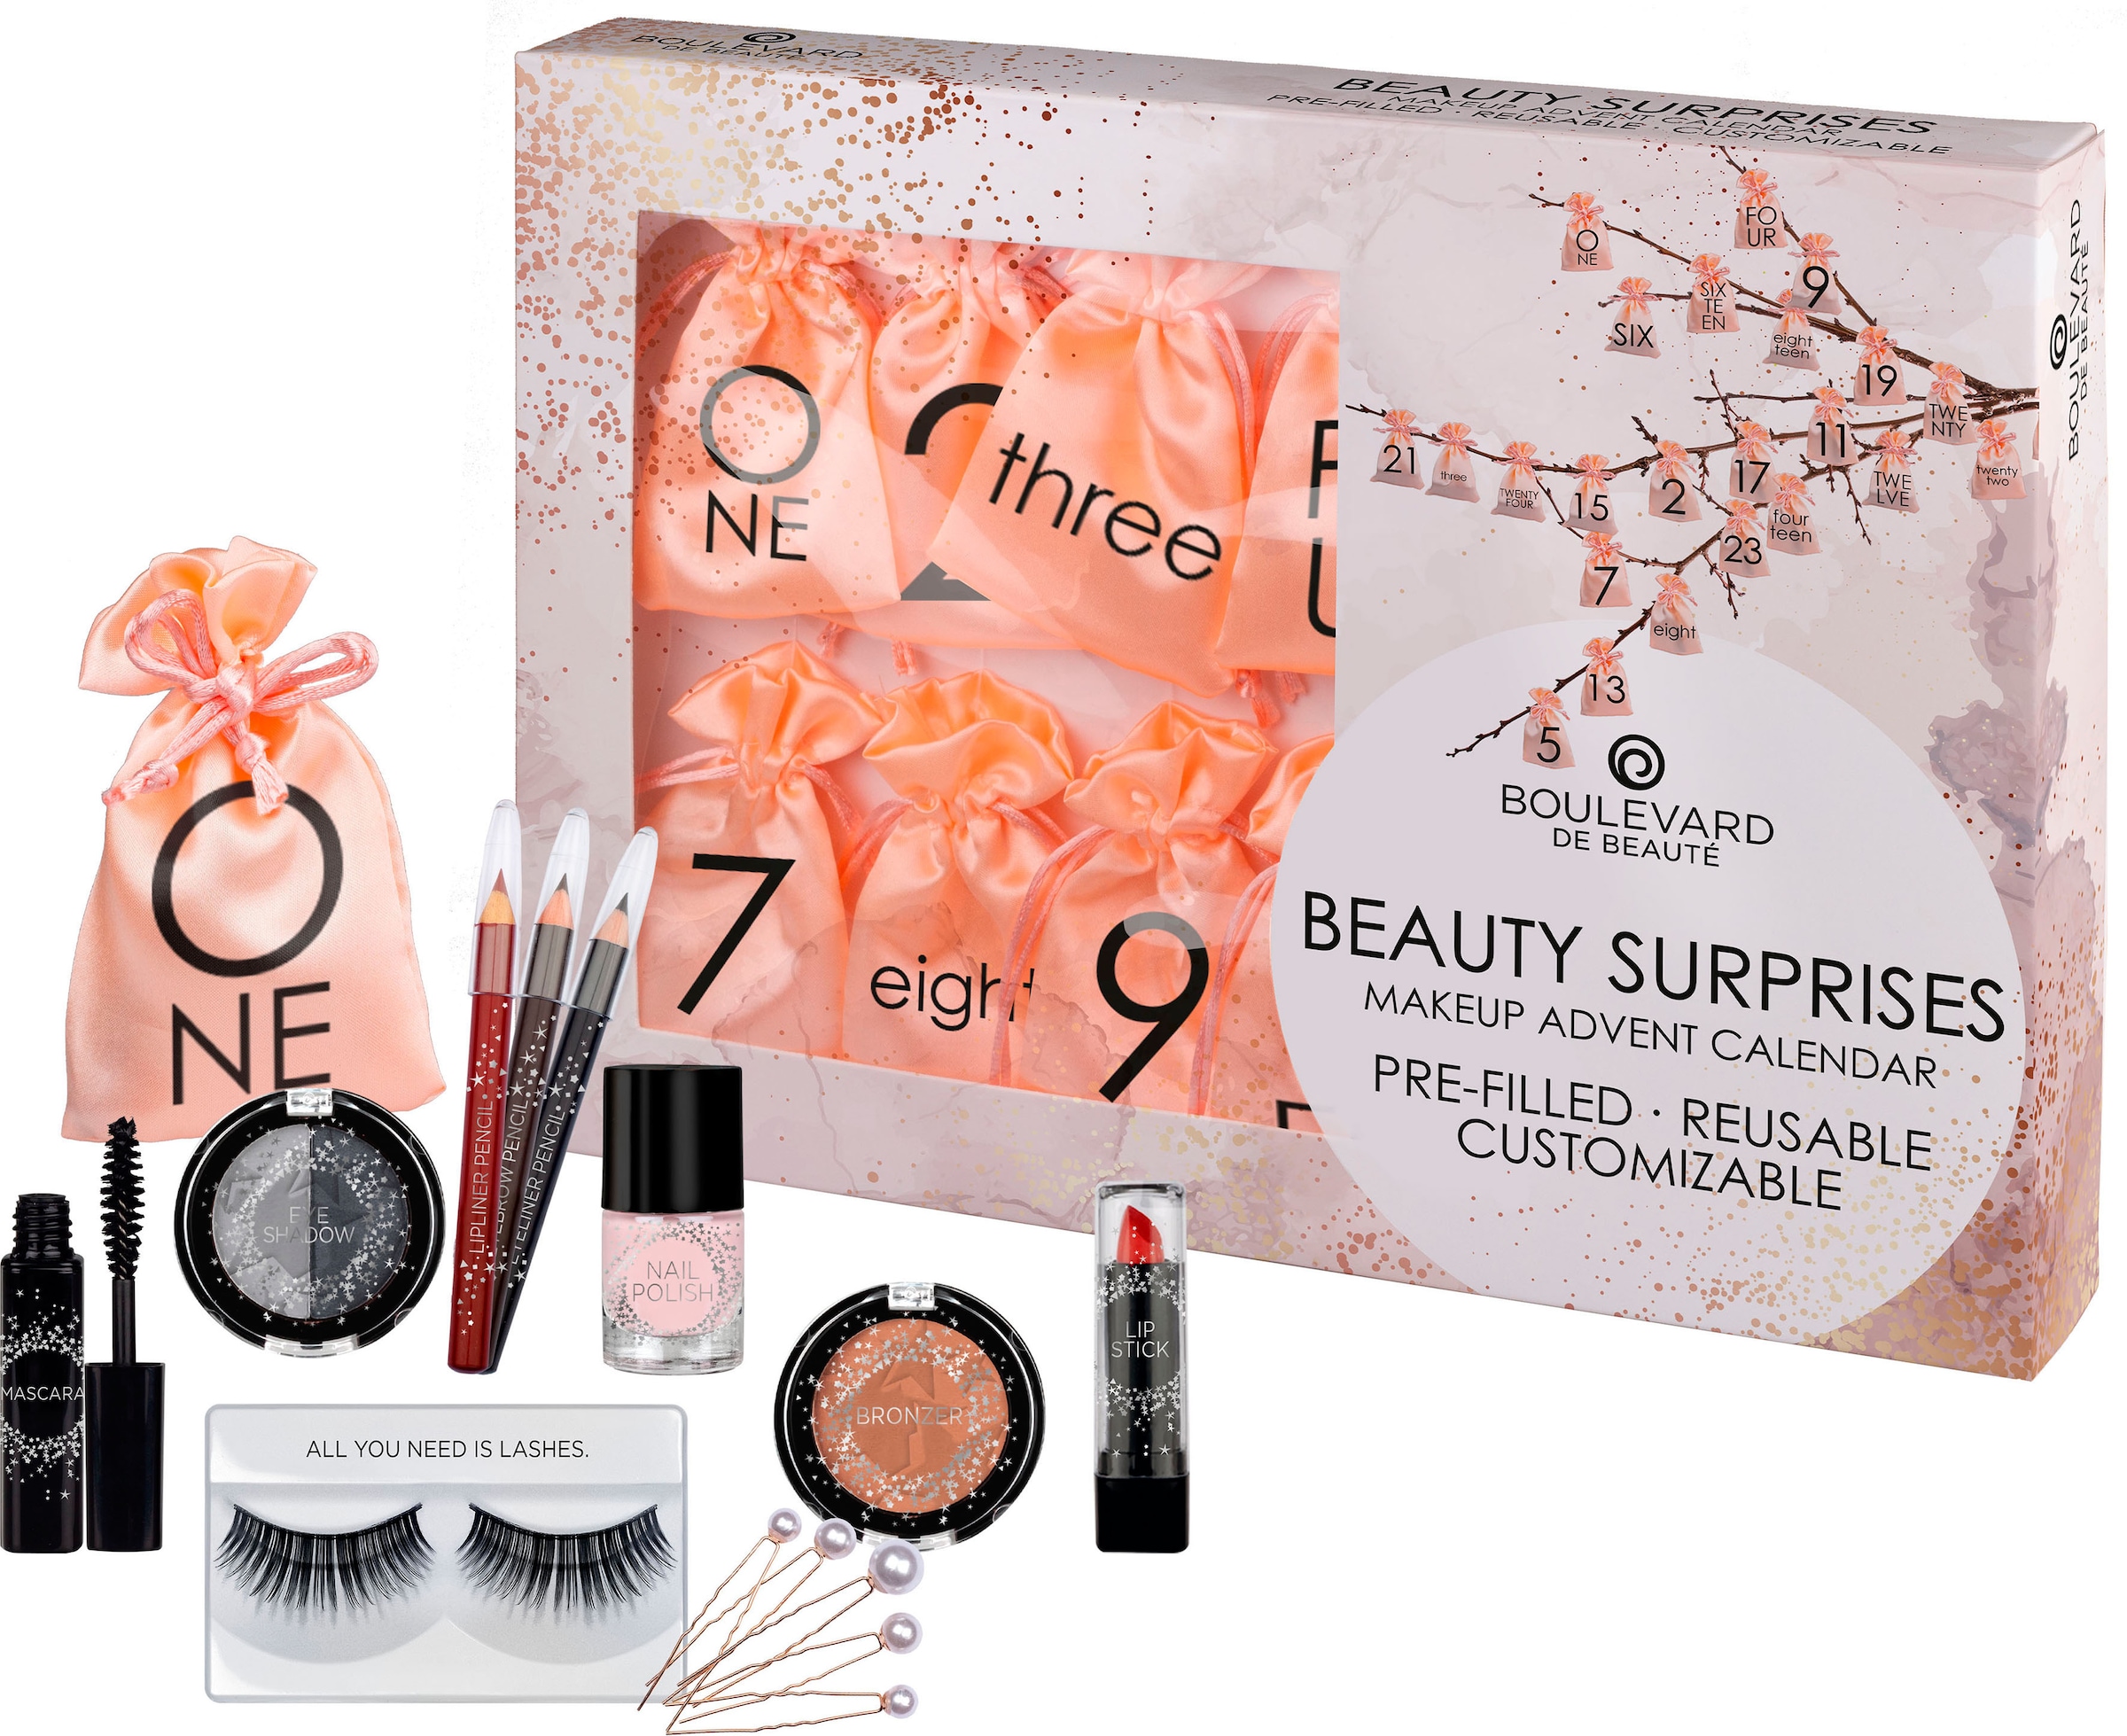 Makeup Adventskalender Beauté de kaufen - Advent Calendar«, Erwachsene Surprises Boulevard »Beauty für günstig online